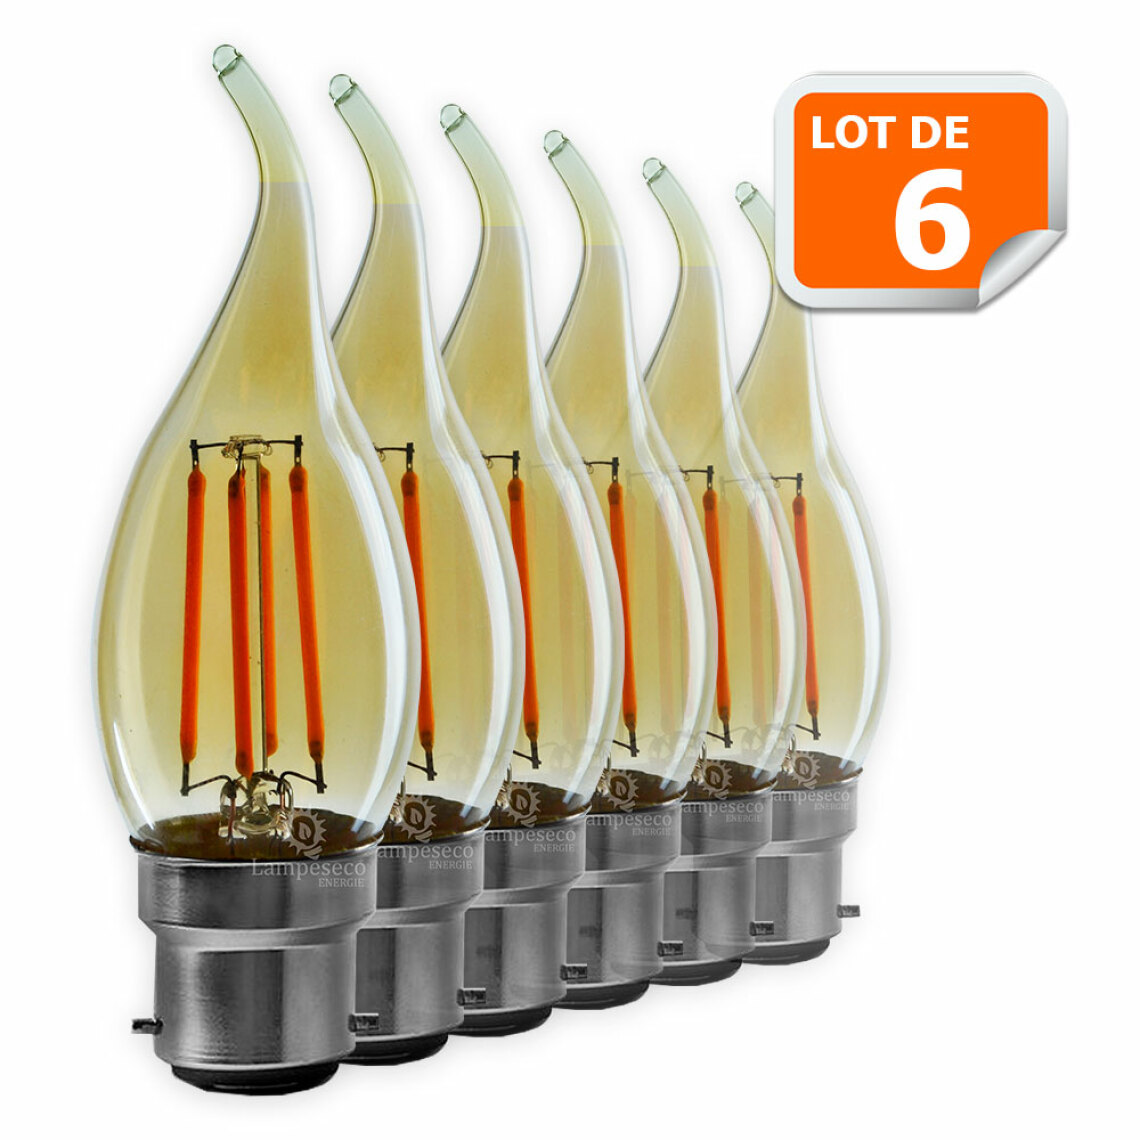 Lampesecoenergie - Lot de 6 Ampoules décorative led à filament Doré 4 watt (éq. 42 Watt) Culot B22 - Ampoules LED